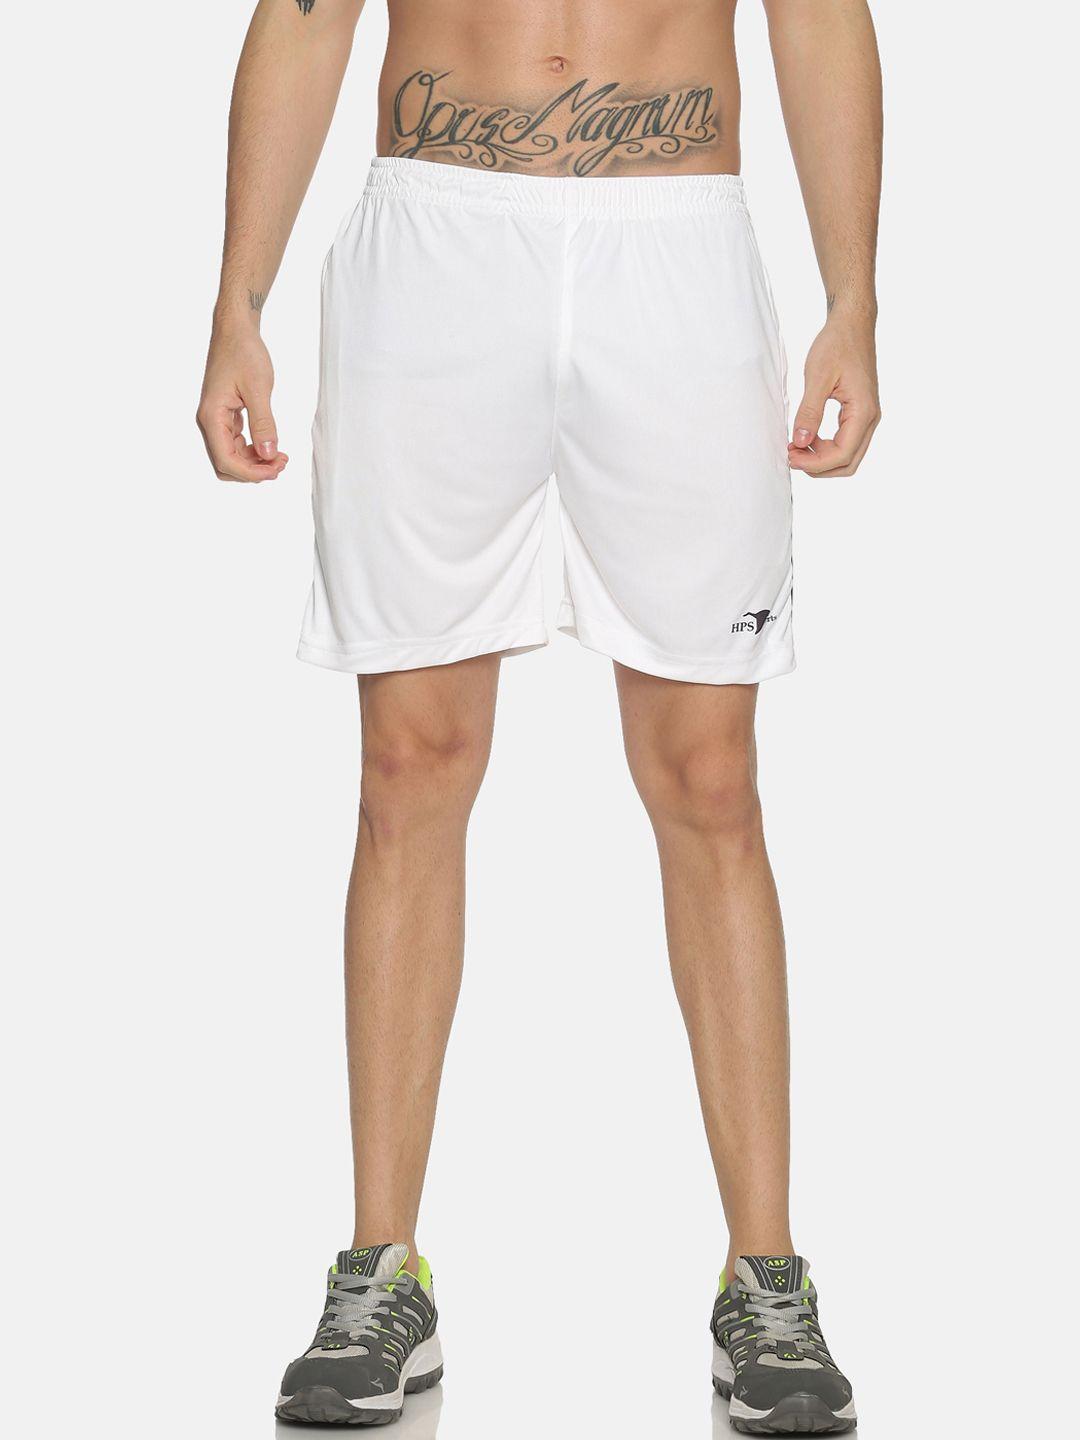 hps sports men white slim fit sports shorts